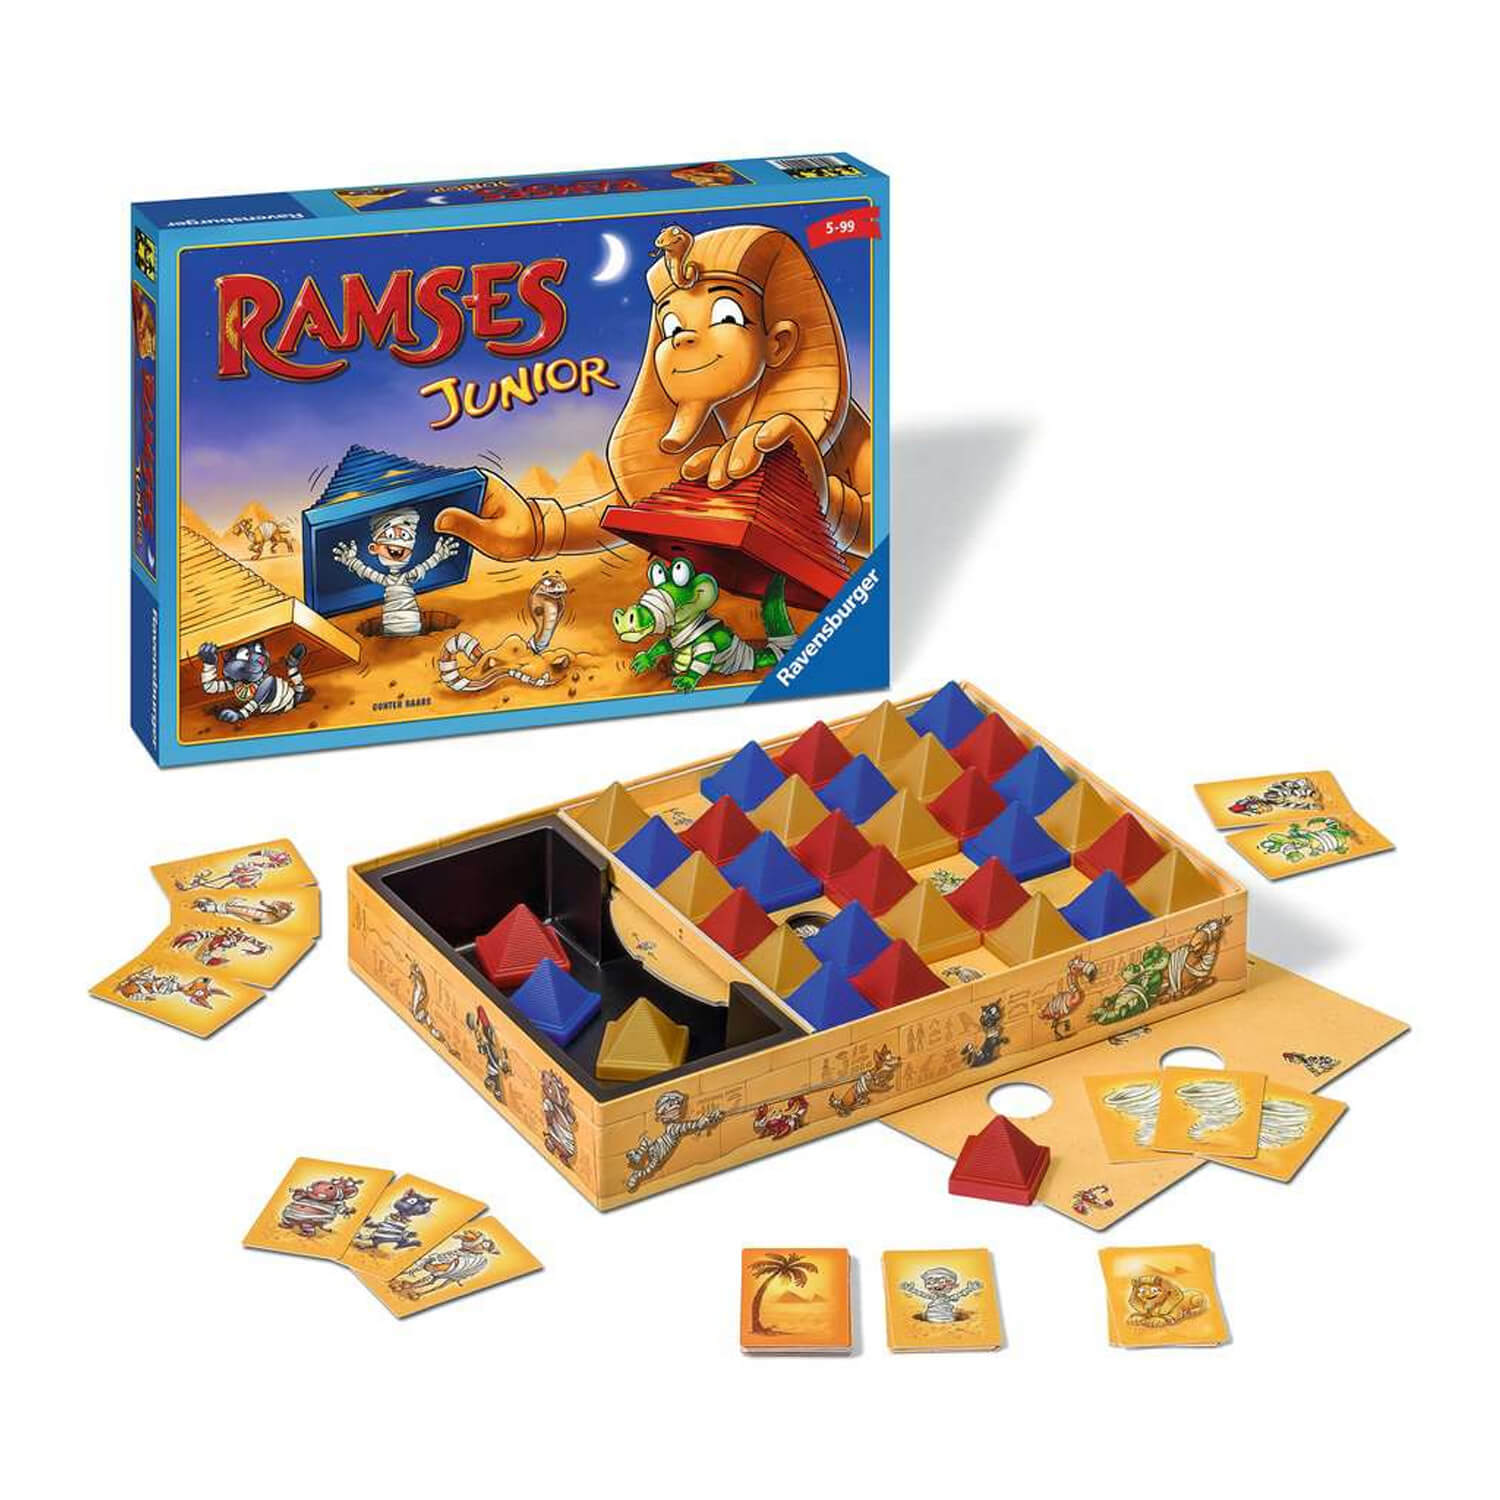 Ramsès Junior - Jeux et jouets Ravensburger - Avenue des Jeux